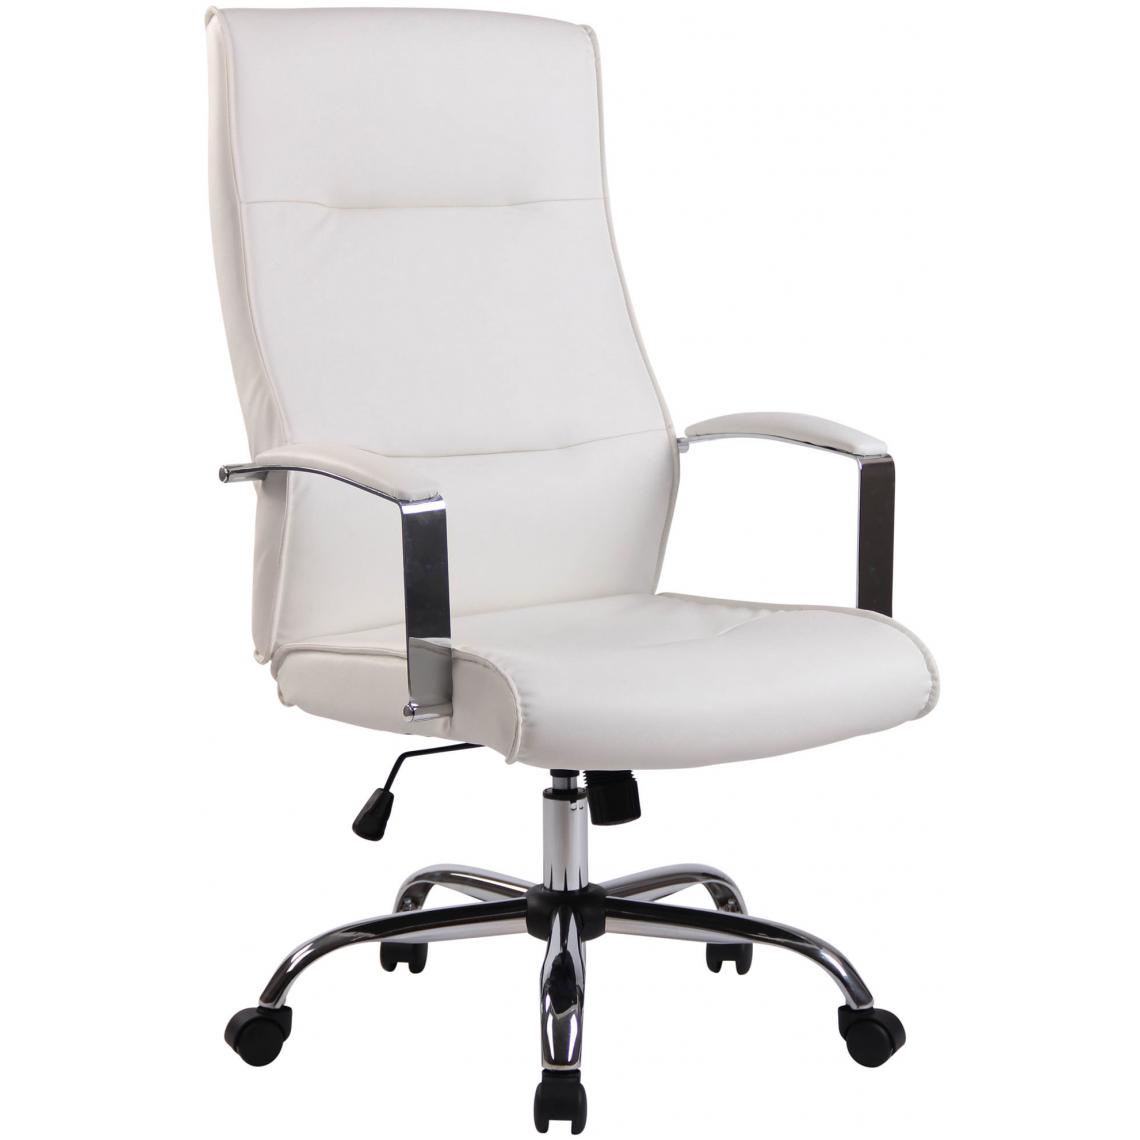 Icaverne - Magnifique Chaise de bureau en similicuir categorie Reykjavik couleur blanc - Chaises